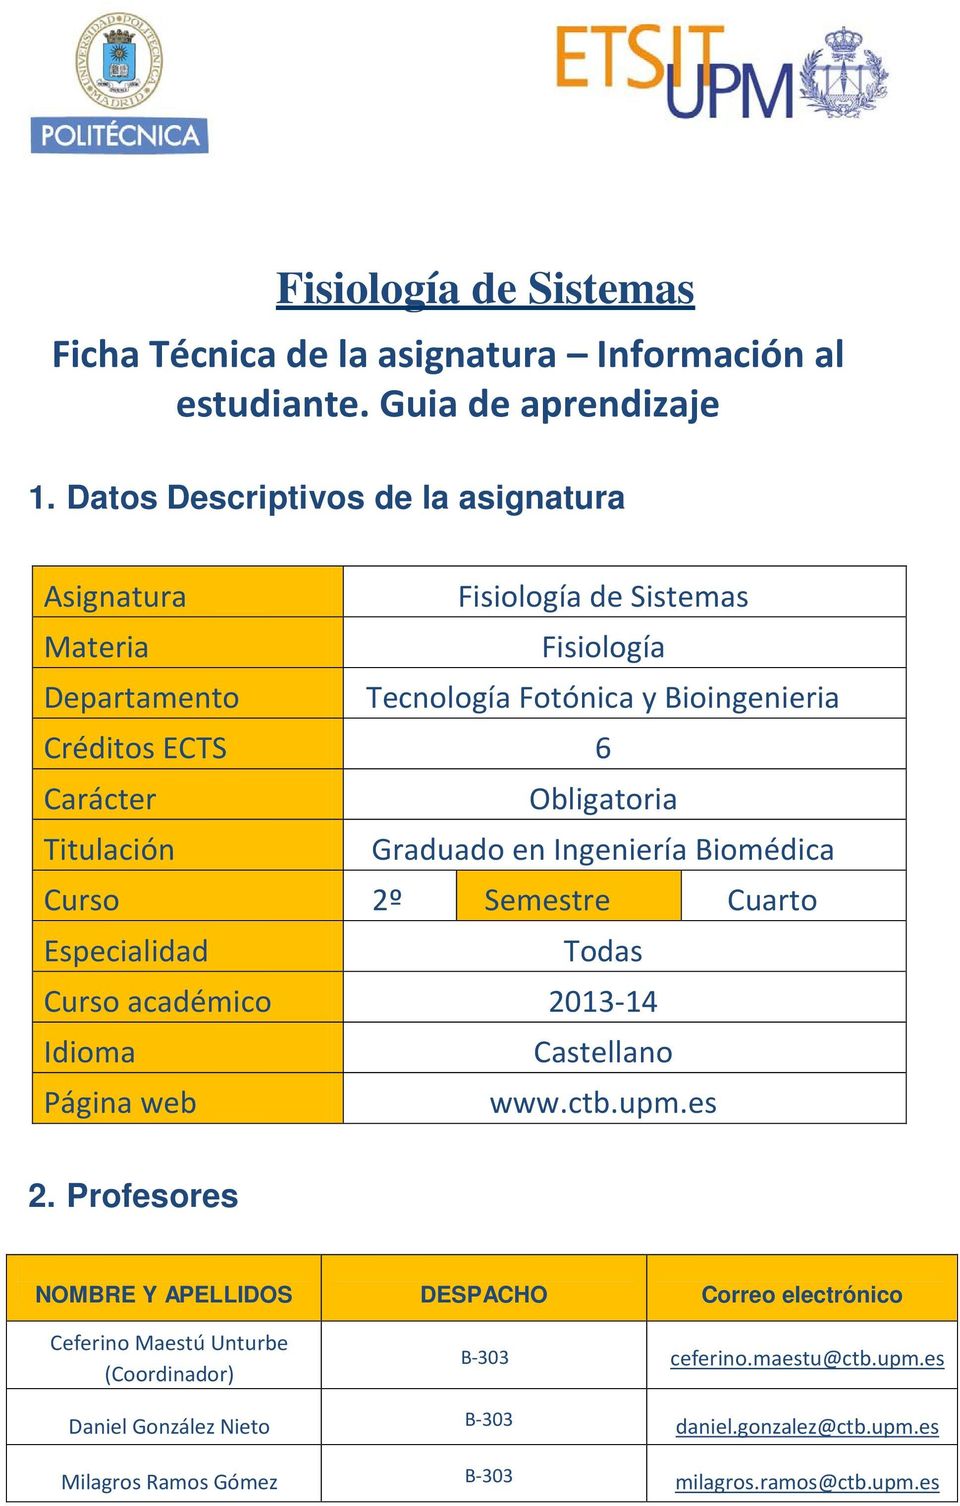 Obligatoria Titulación Graduado en Ingeniería Biomédica Curso 2º Semestre Cuarto Especialidad Todas Curso académico 2013-14 Idioma Castellano Página web www.ctb.upm.